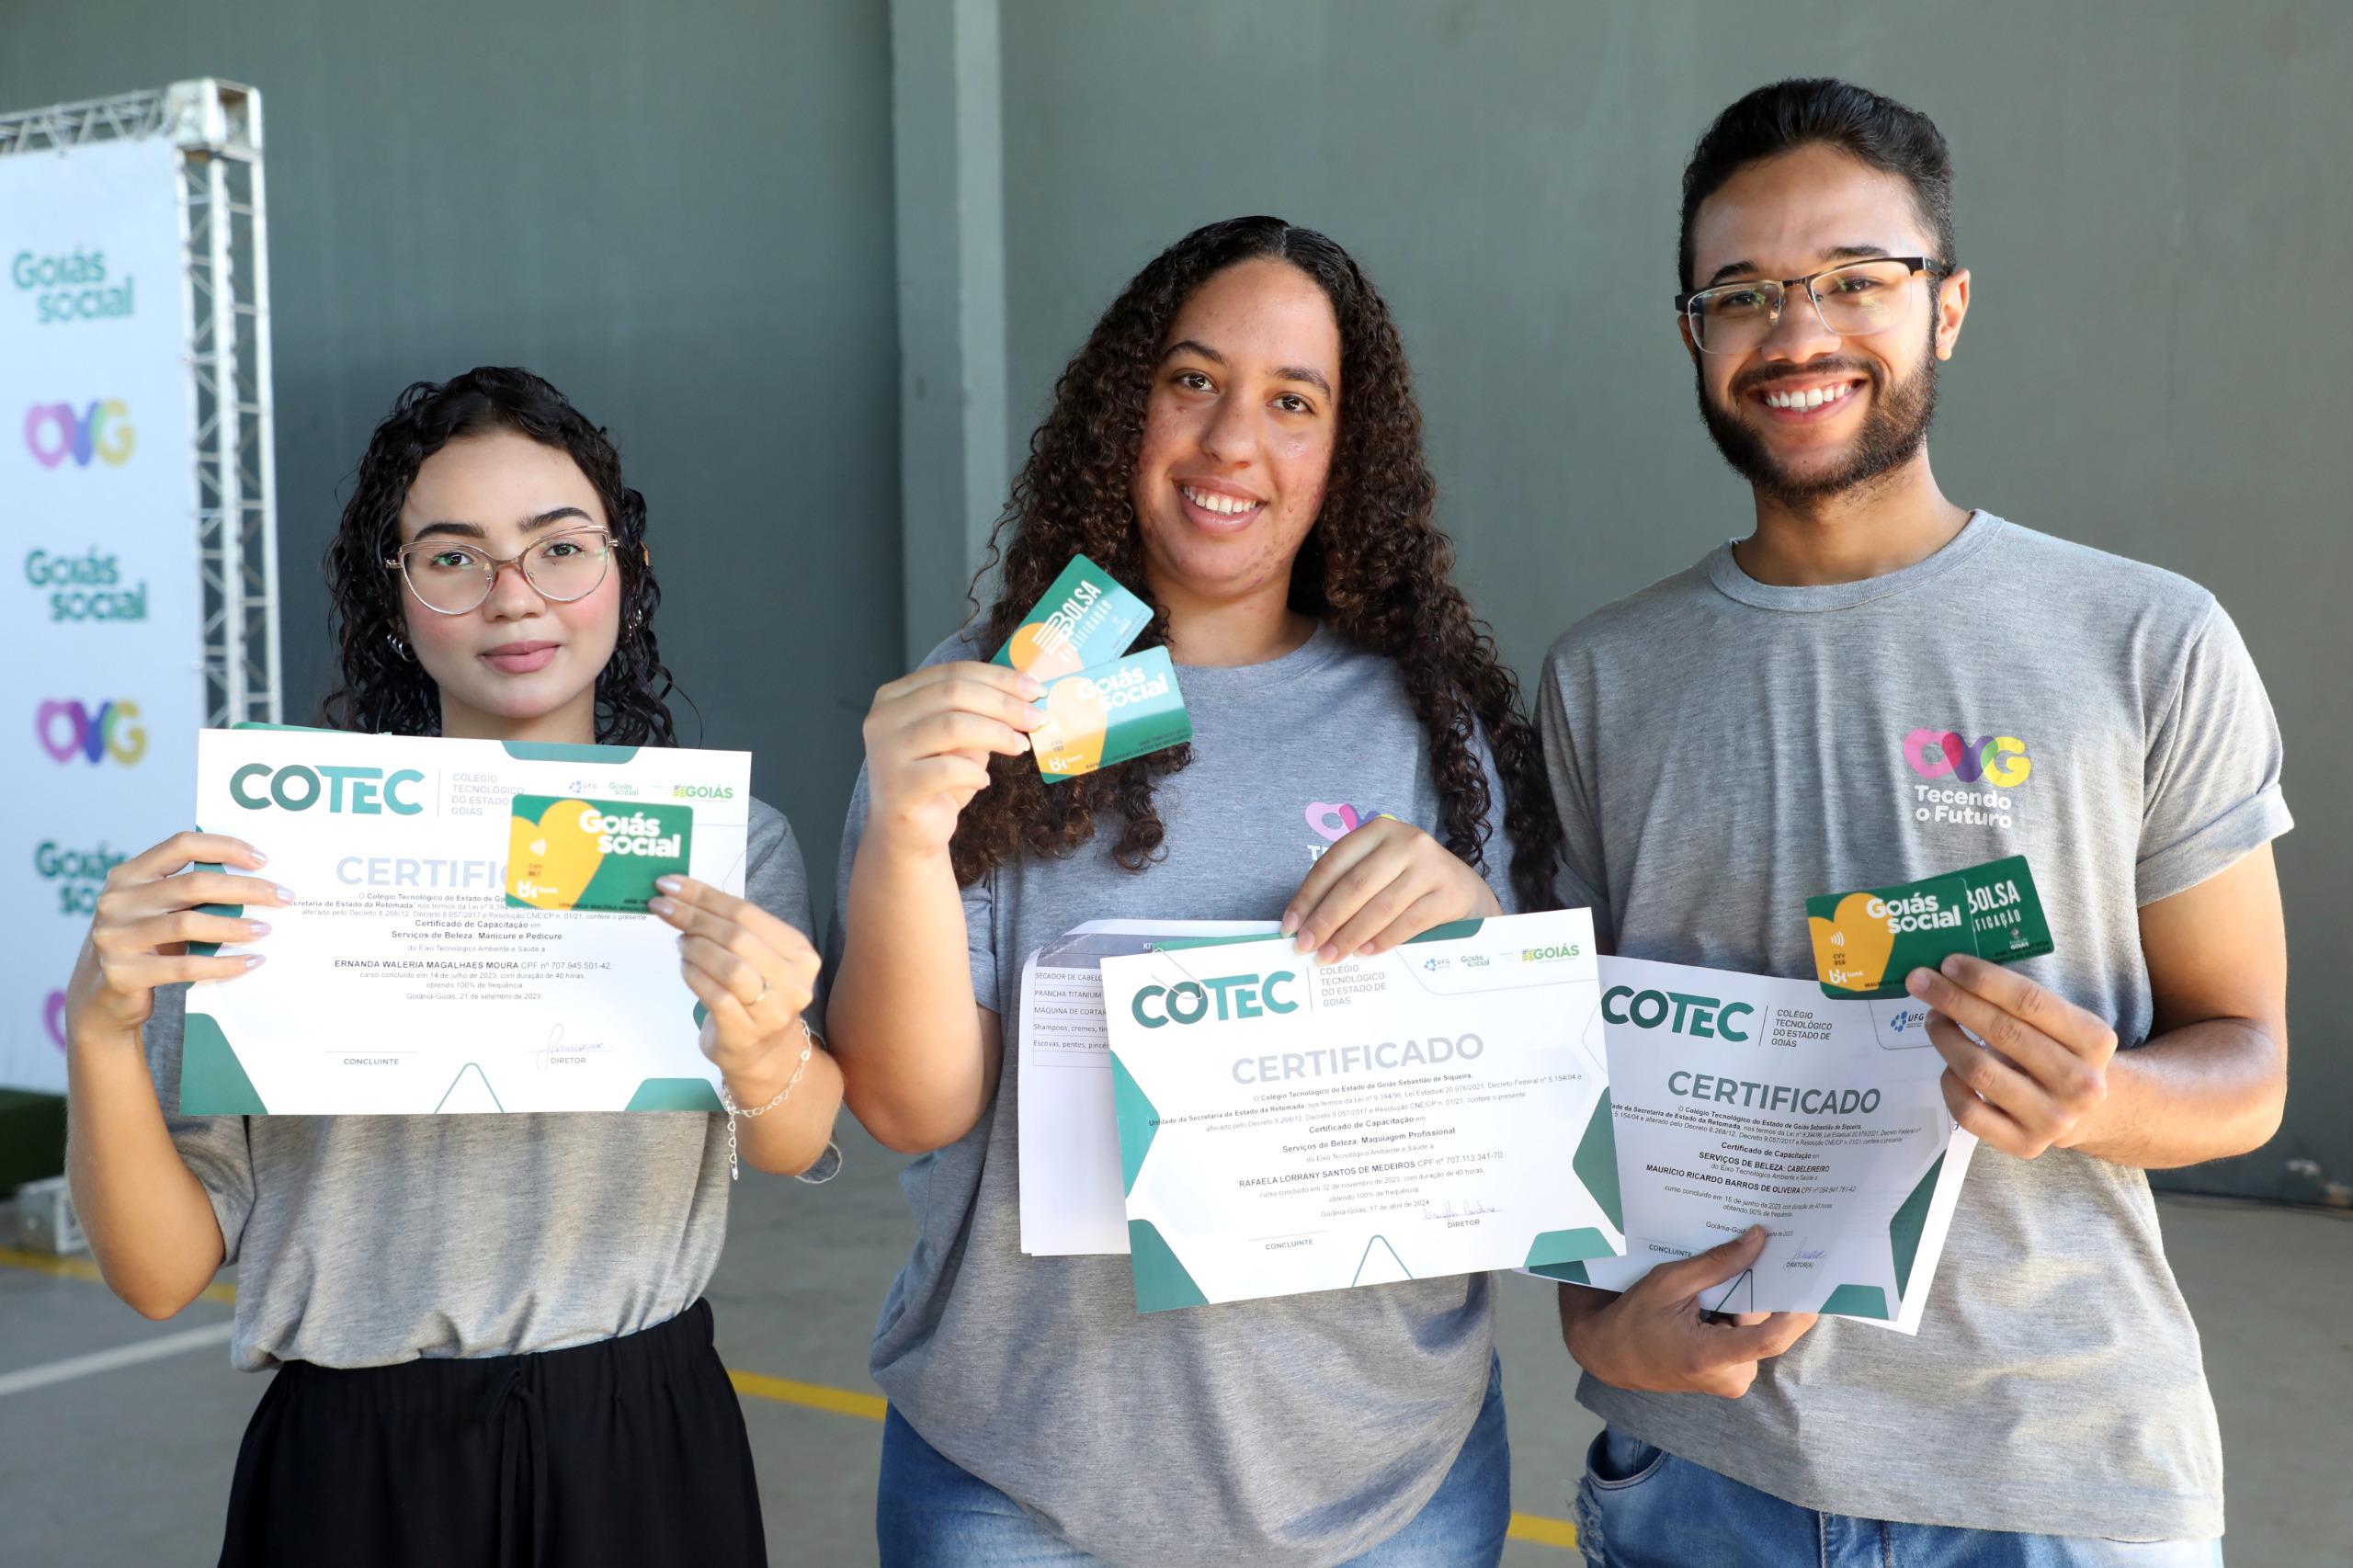 Beneficiários dos Programas da Juventude da OVG recebem cartões do Crédito Social, Bolsa Qualificação e certificados de cursos capacitação. Foto: Aline Cabral